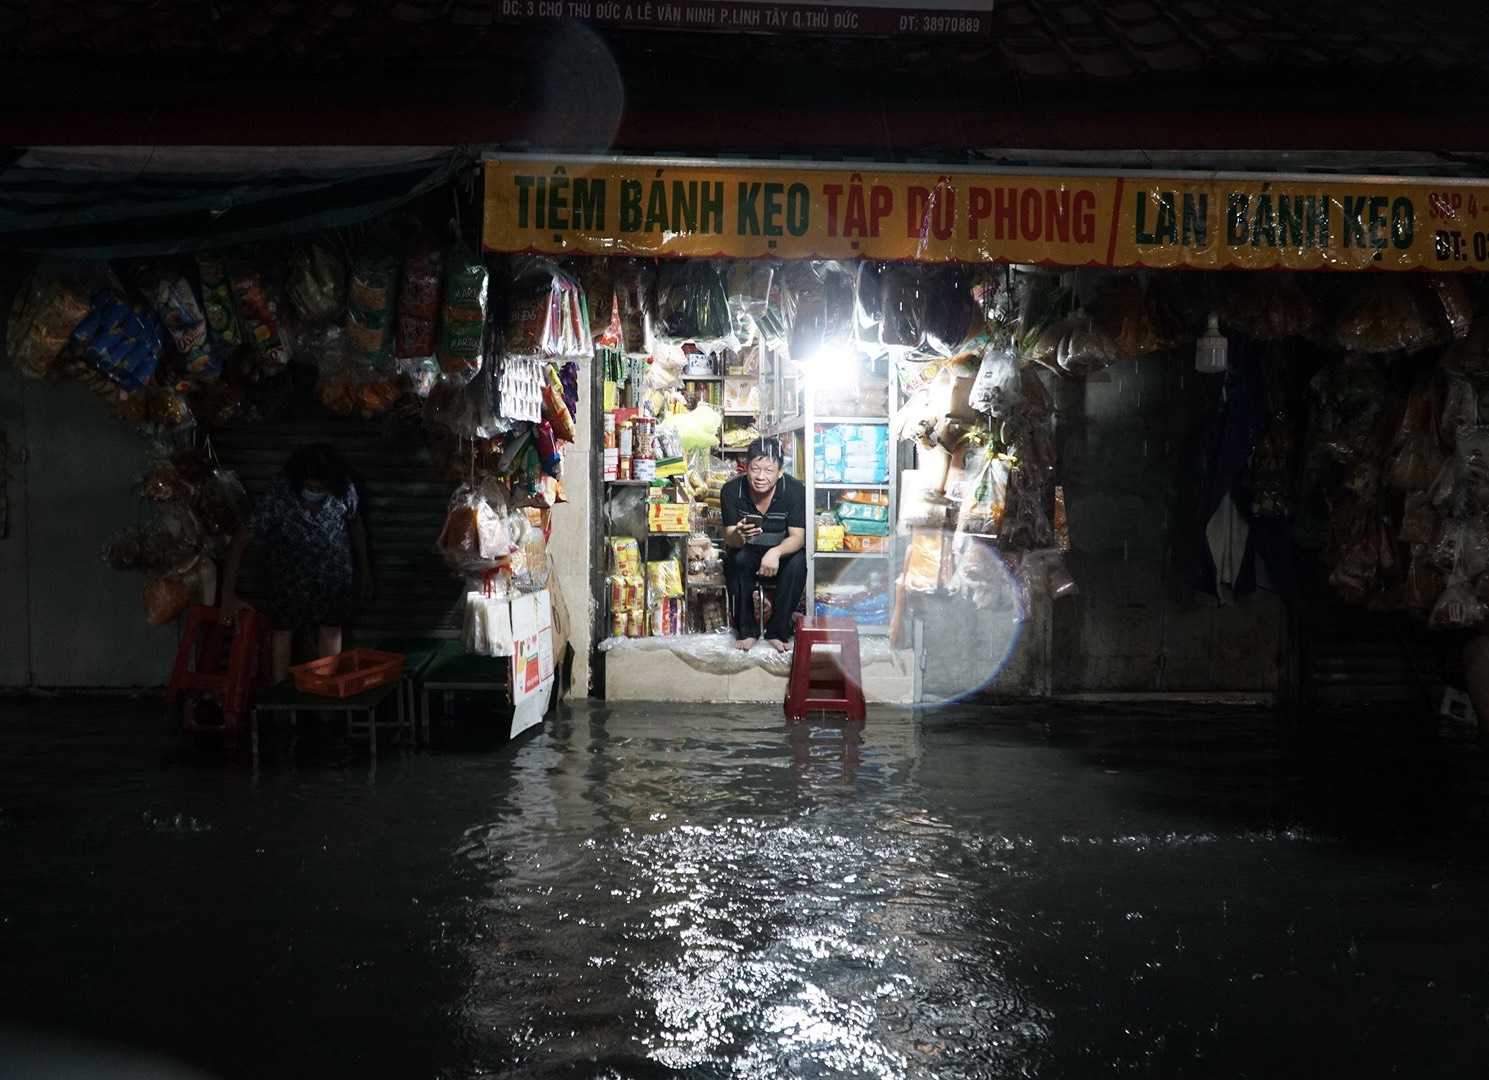 Nước ngập tại chợ Thủ Đức vào chiều tối 20.5 làm nhiều người buôn bán gặp nhiều khó khăn